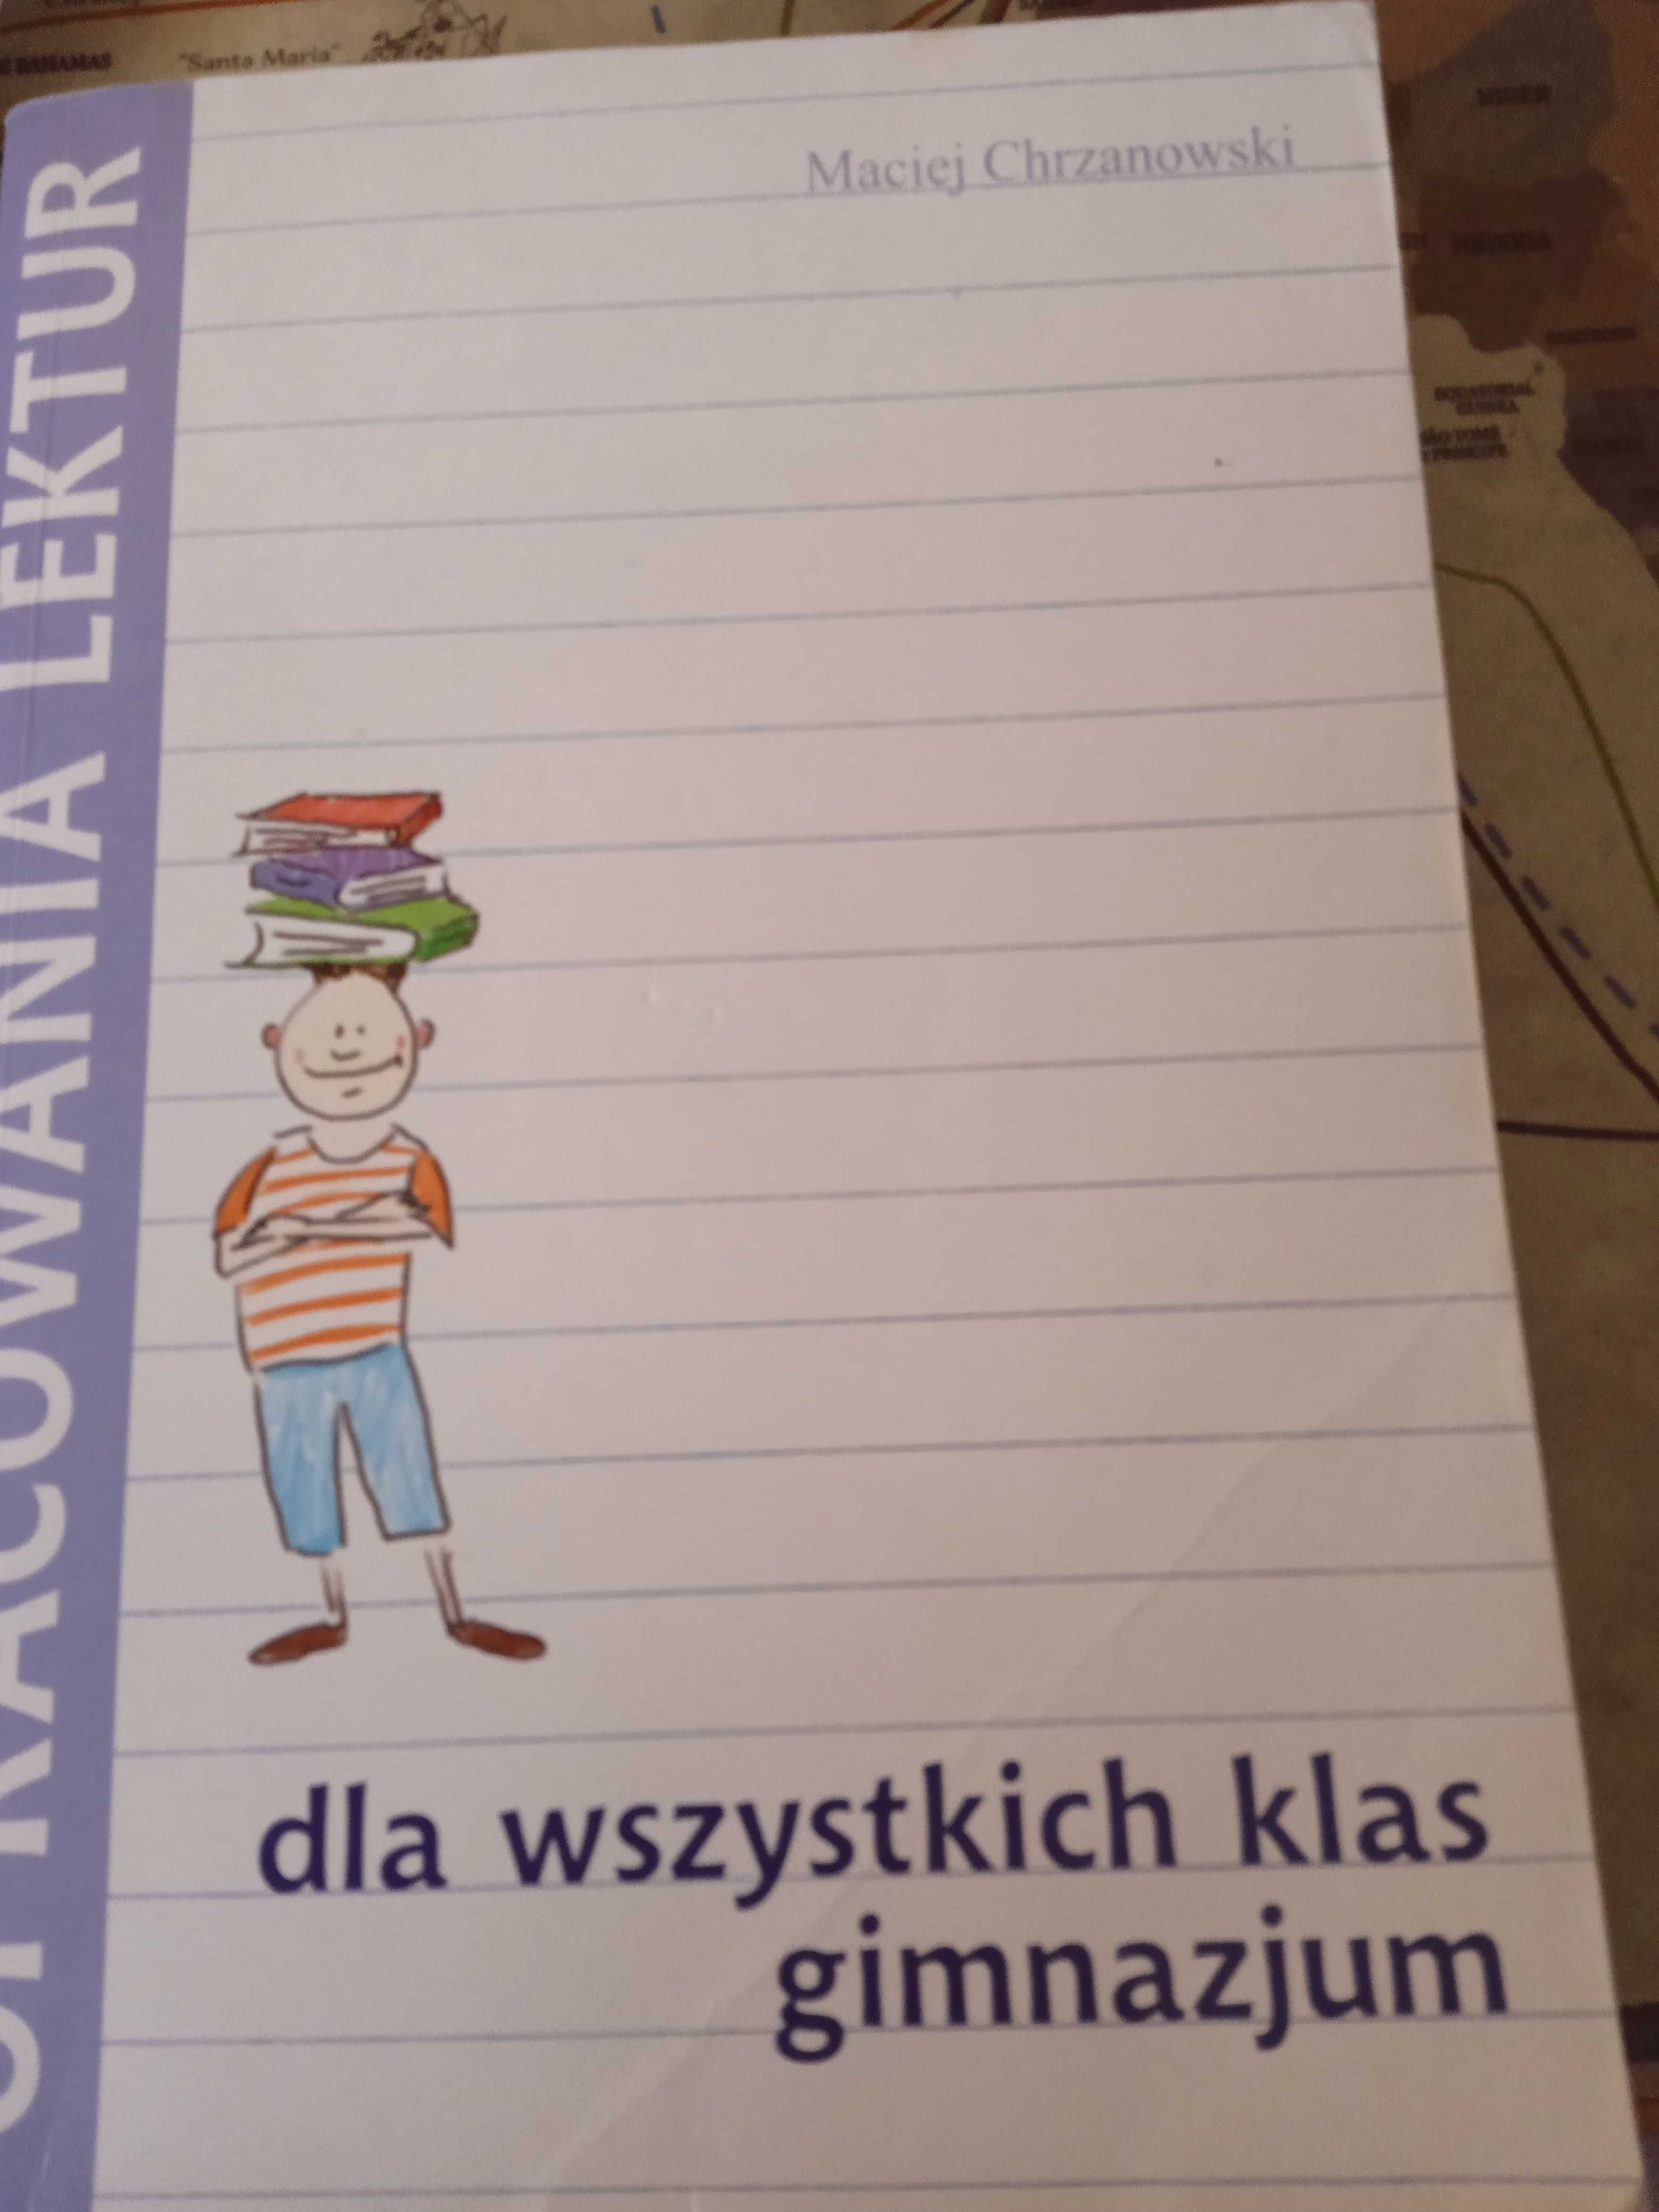 Opracowanie lektur dla wszystkich klas gimnazjum Maciej Chrzanowski